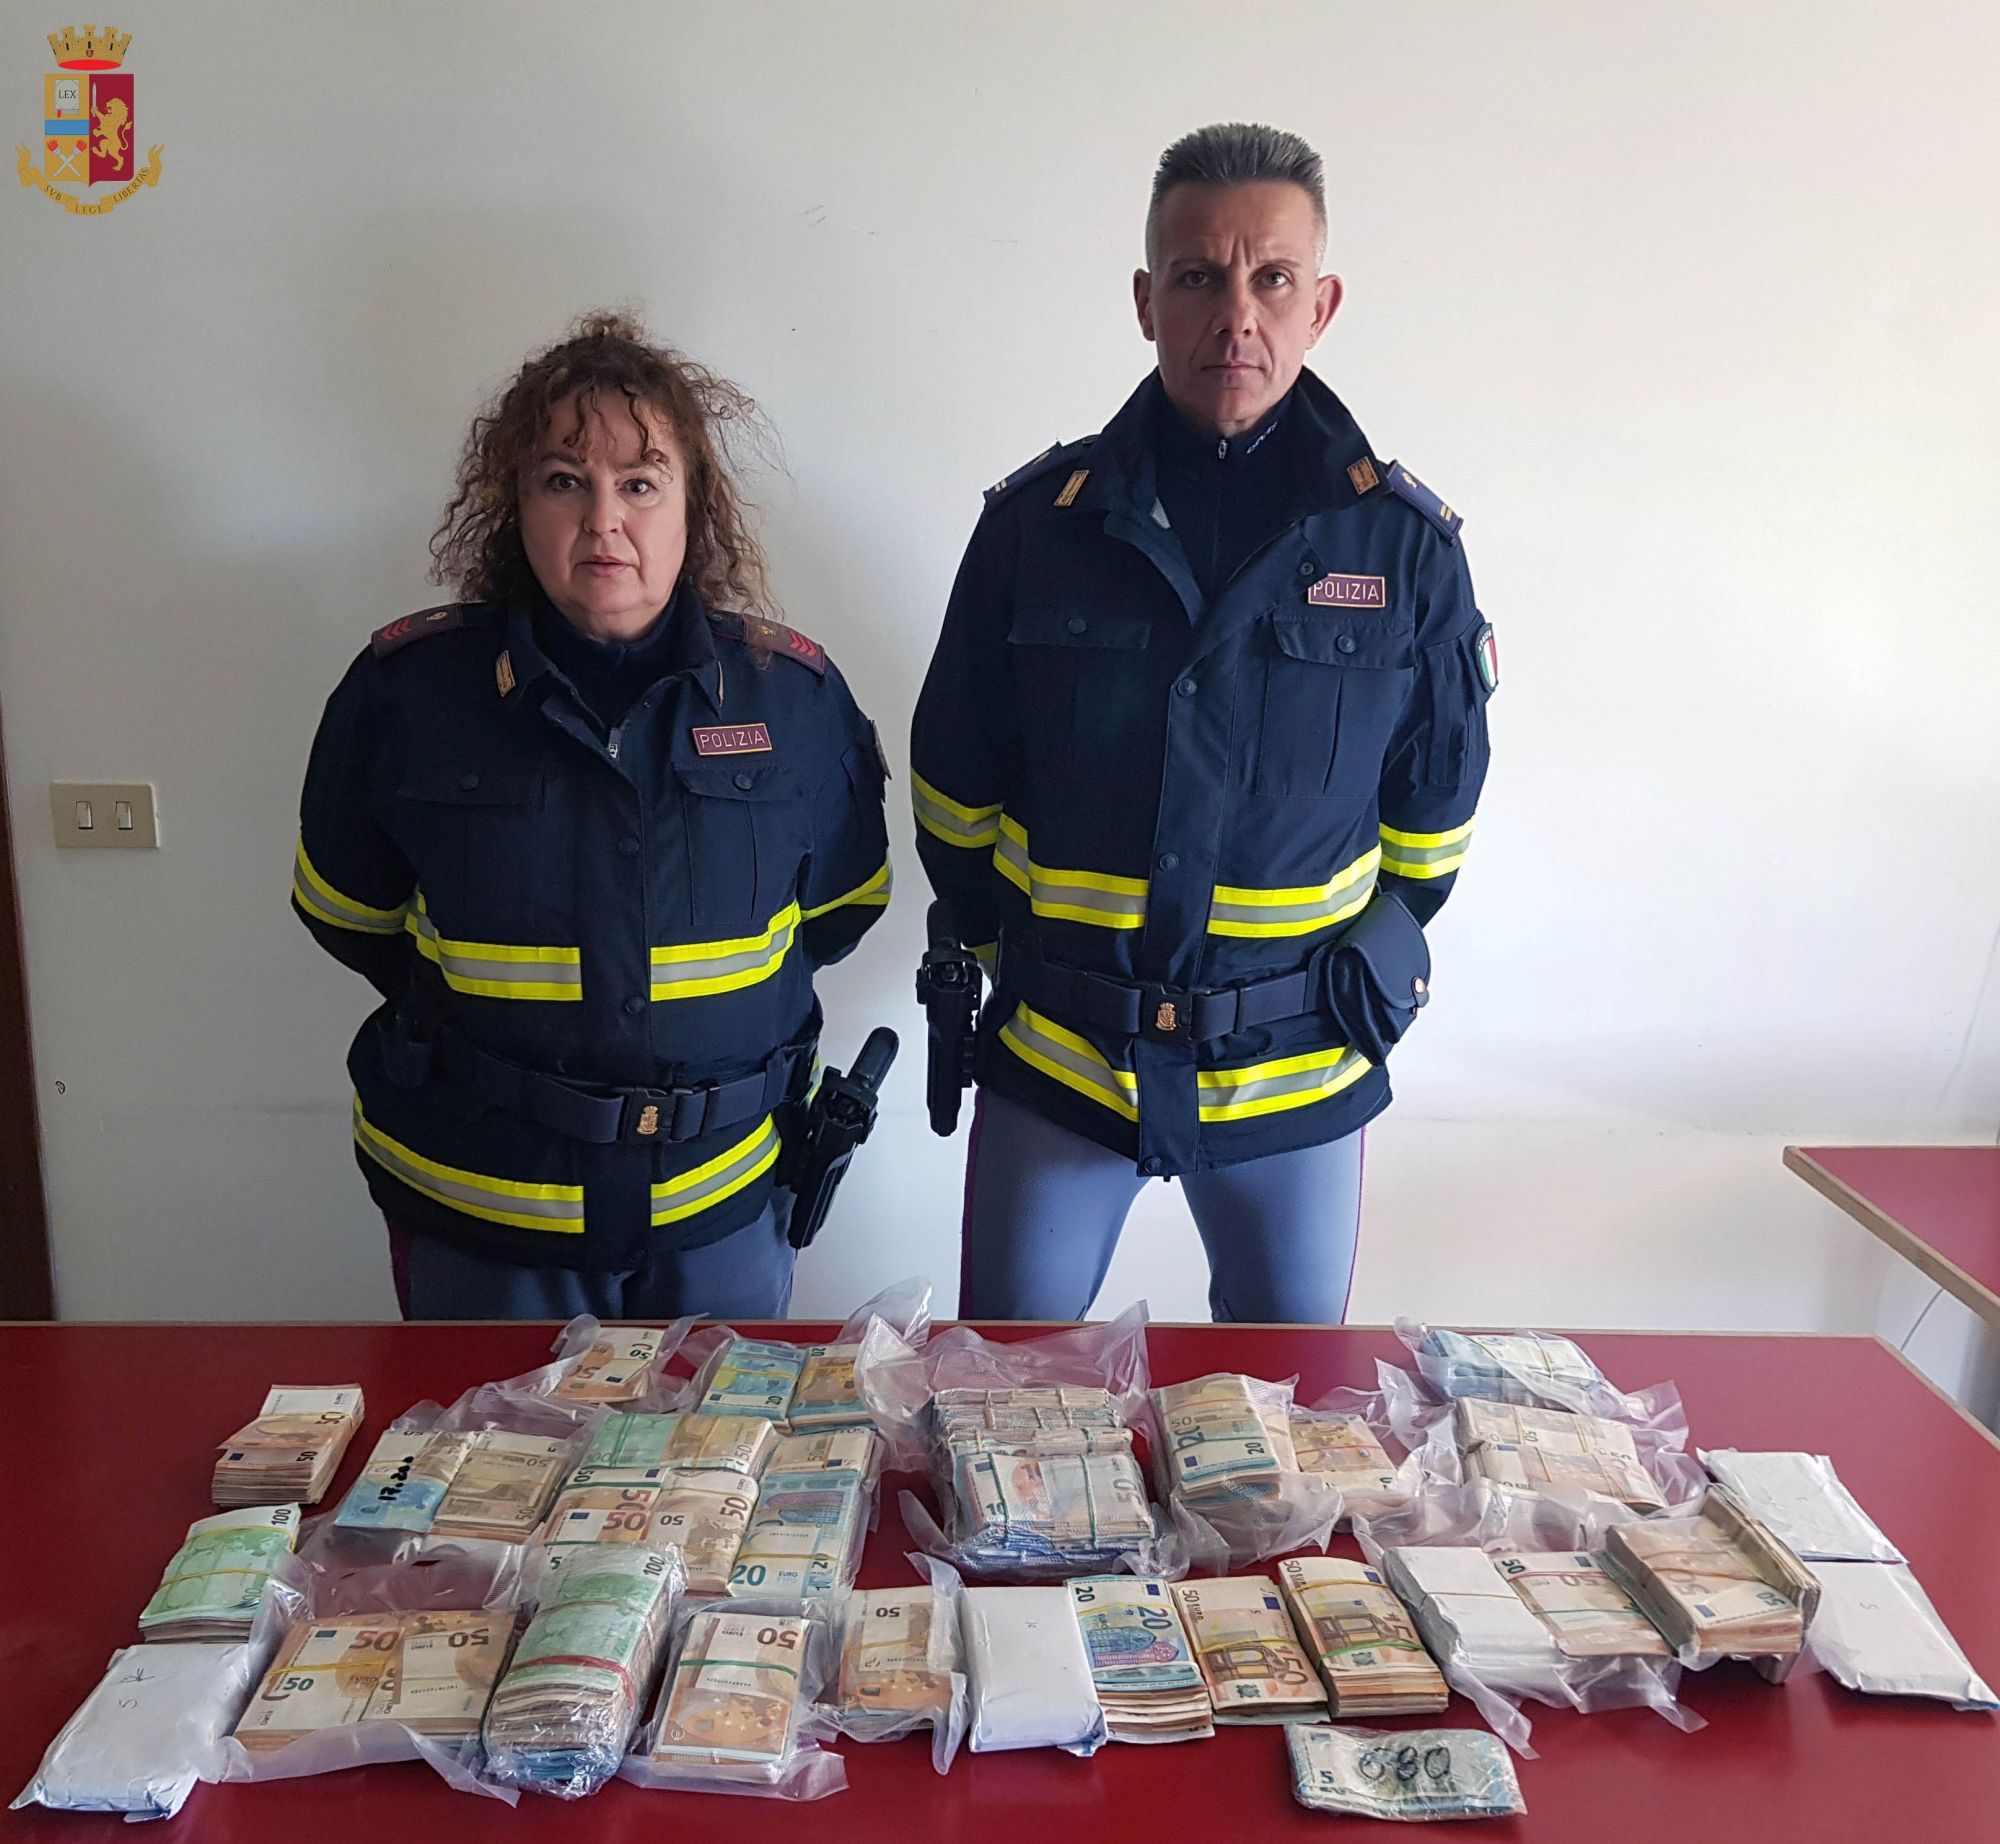 In A/1 arrestato un ladro ricercato in Francia. La Polstrada sequestra a due ricettatori quasi 400.000 euro